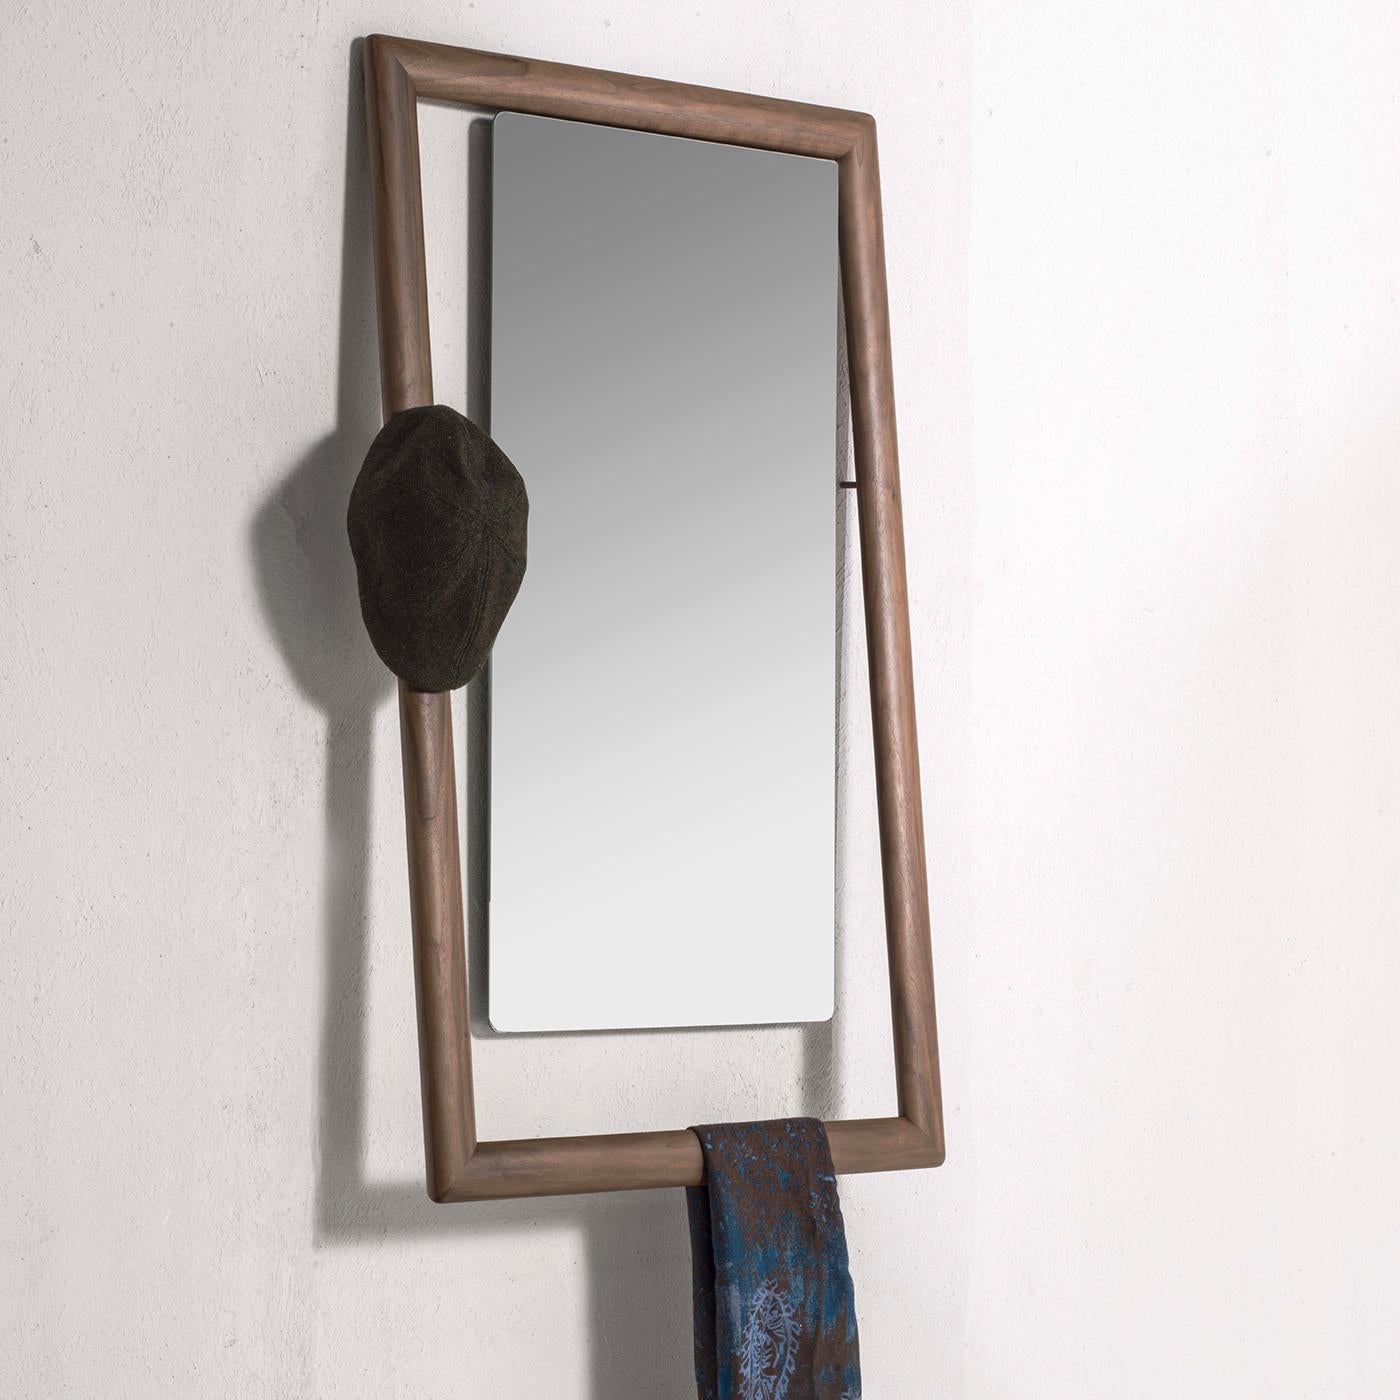 Véritable accessoire multifonctionnel, le miroir Oblique est suspendu dans un cadre en bois massif et est doté d'un subtil porte-manteau de forme ovale. Il sert à la fois de miroir et de porte-vêtements, ce qui lui confère un charme supplémentaire.